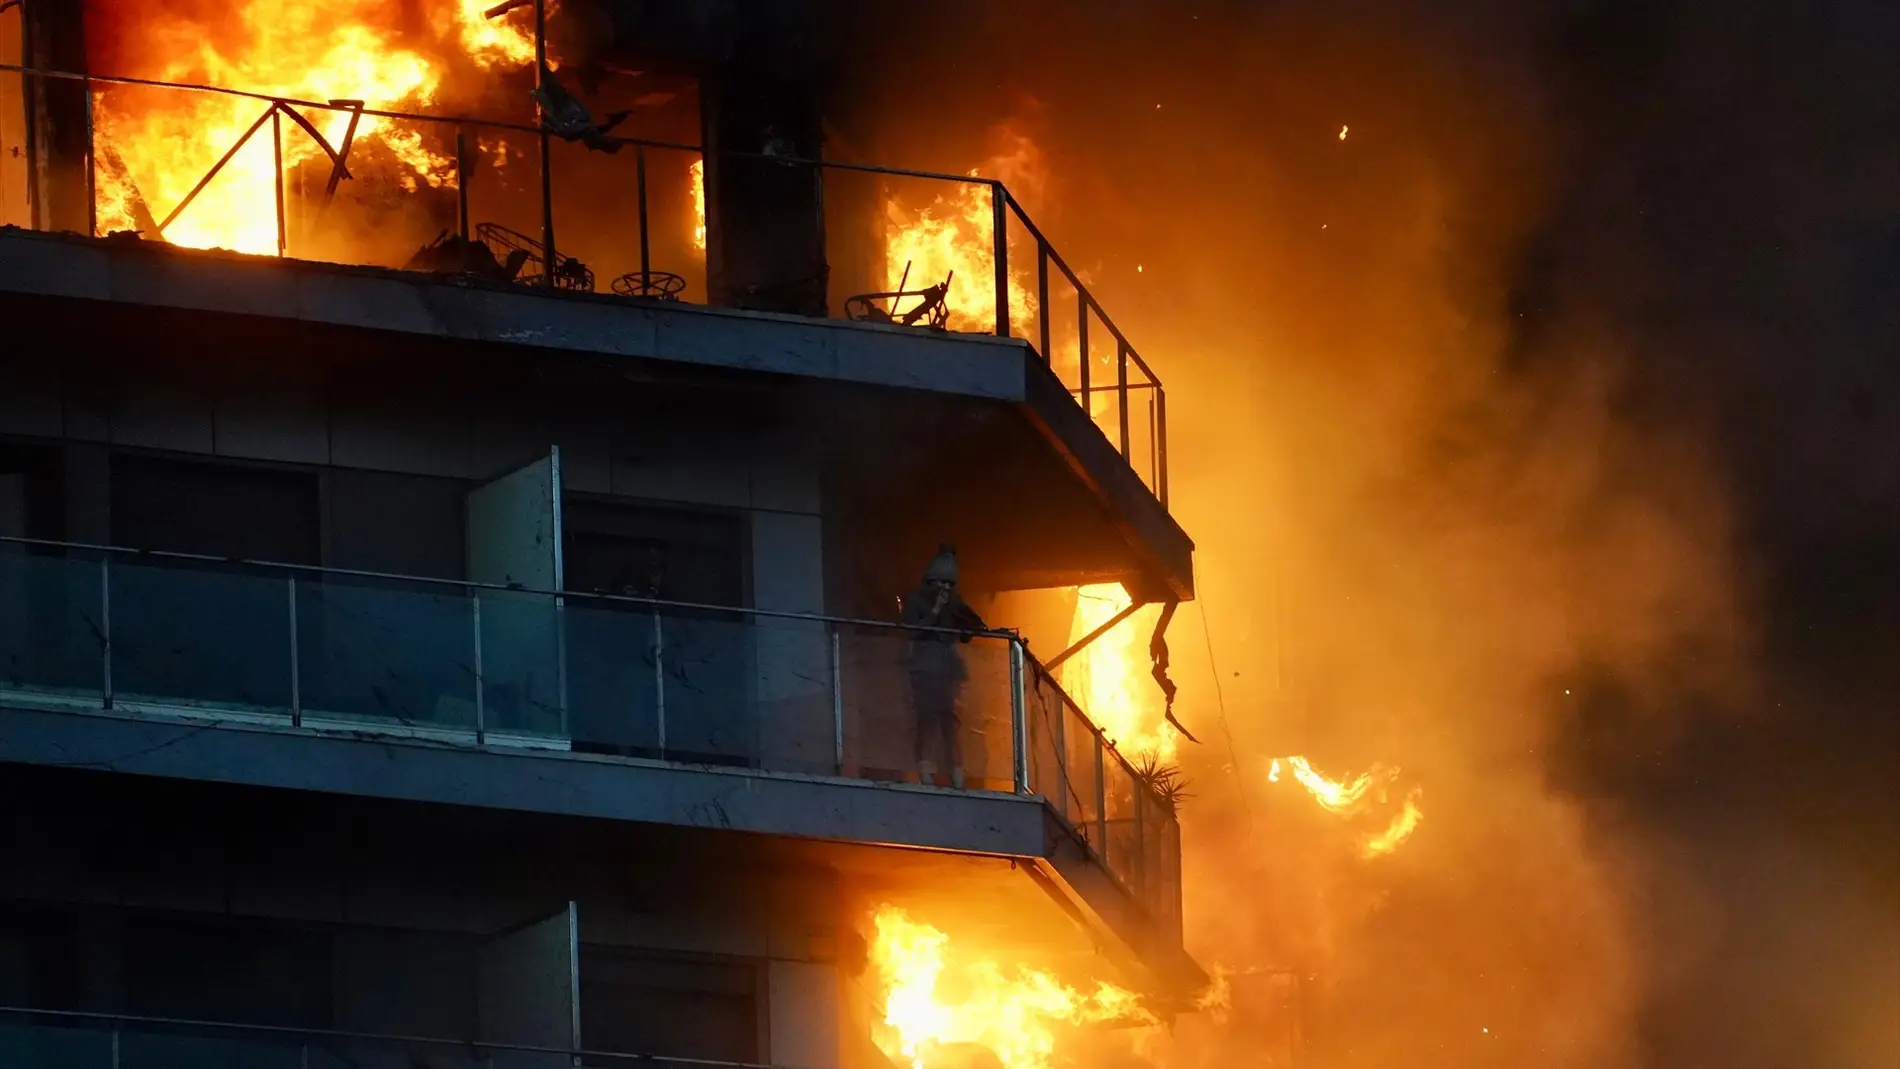 Una persona en un balcón del edificio en llamas, en el barrio de Campanar.